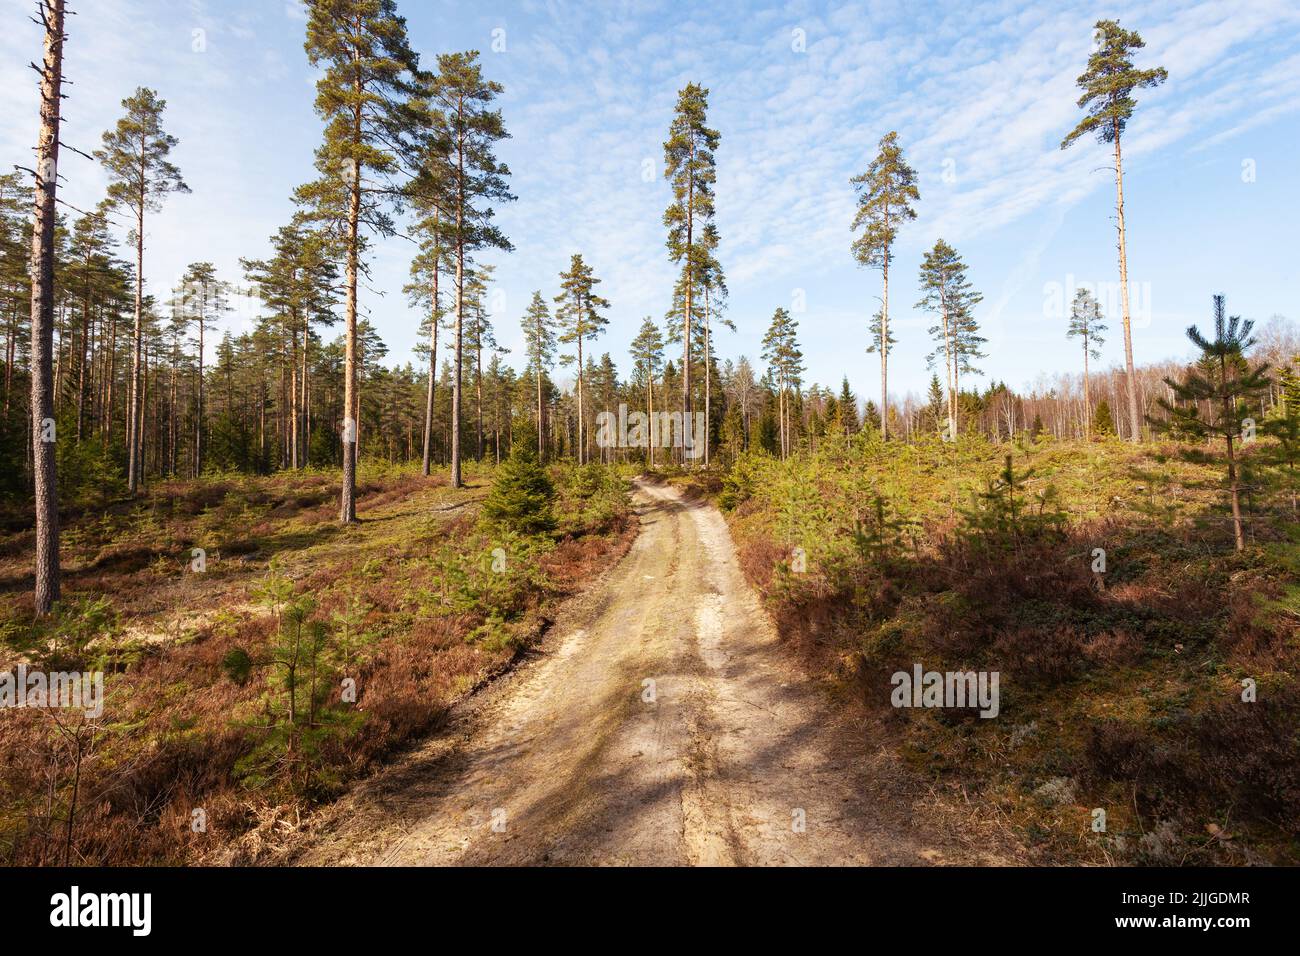 Ein kleiner Pfad, der durch einen aufgeforsteten Wald mit jungen Kiefern und hohen Samenbäumen in Nordeuropa führt Stockfoto